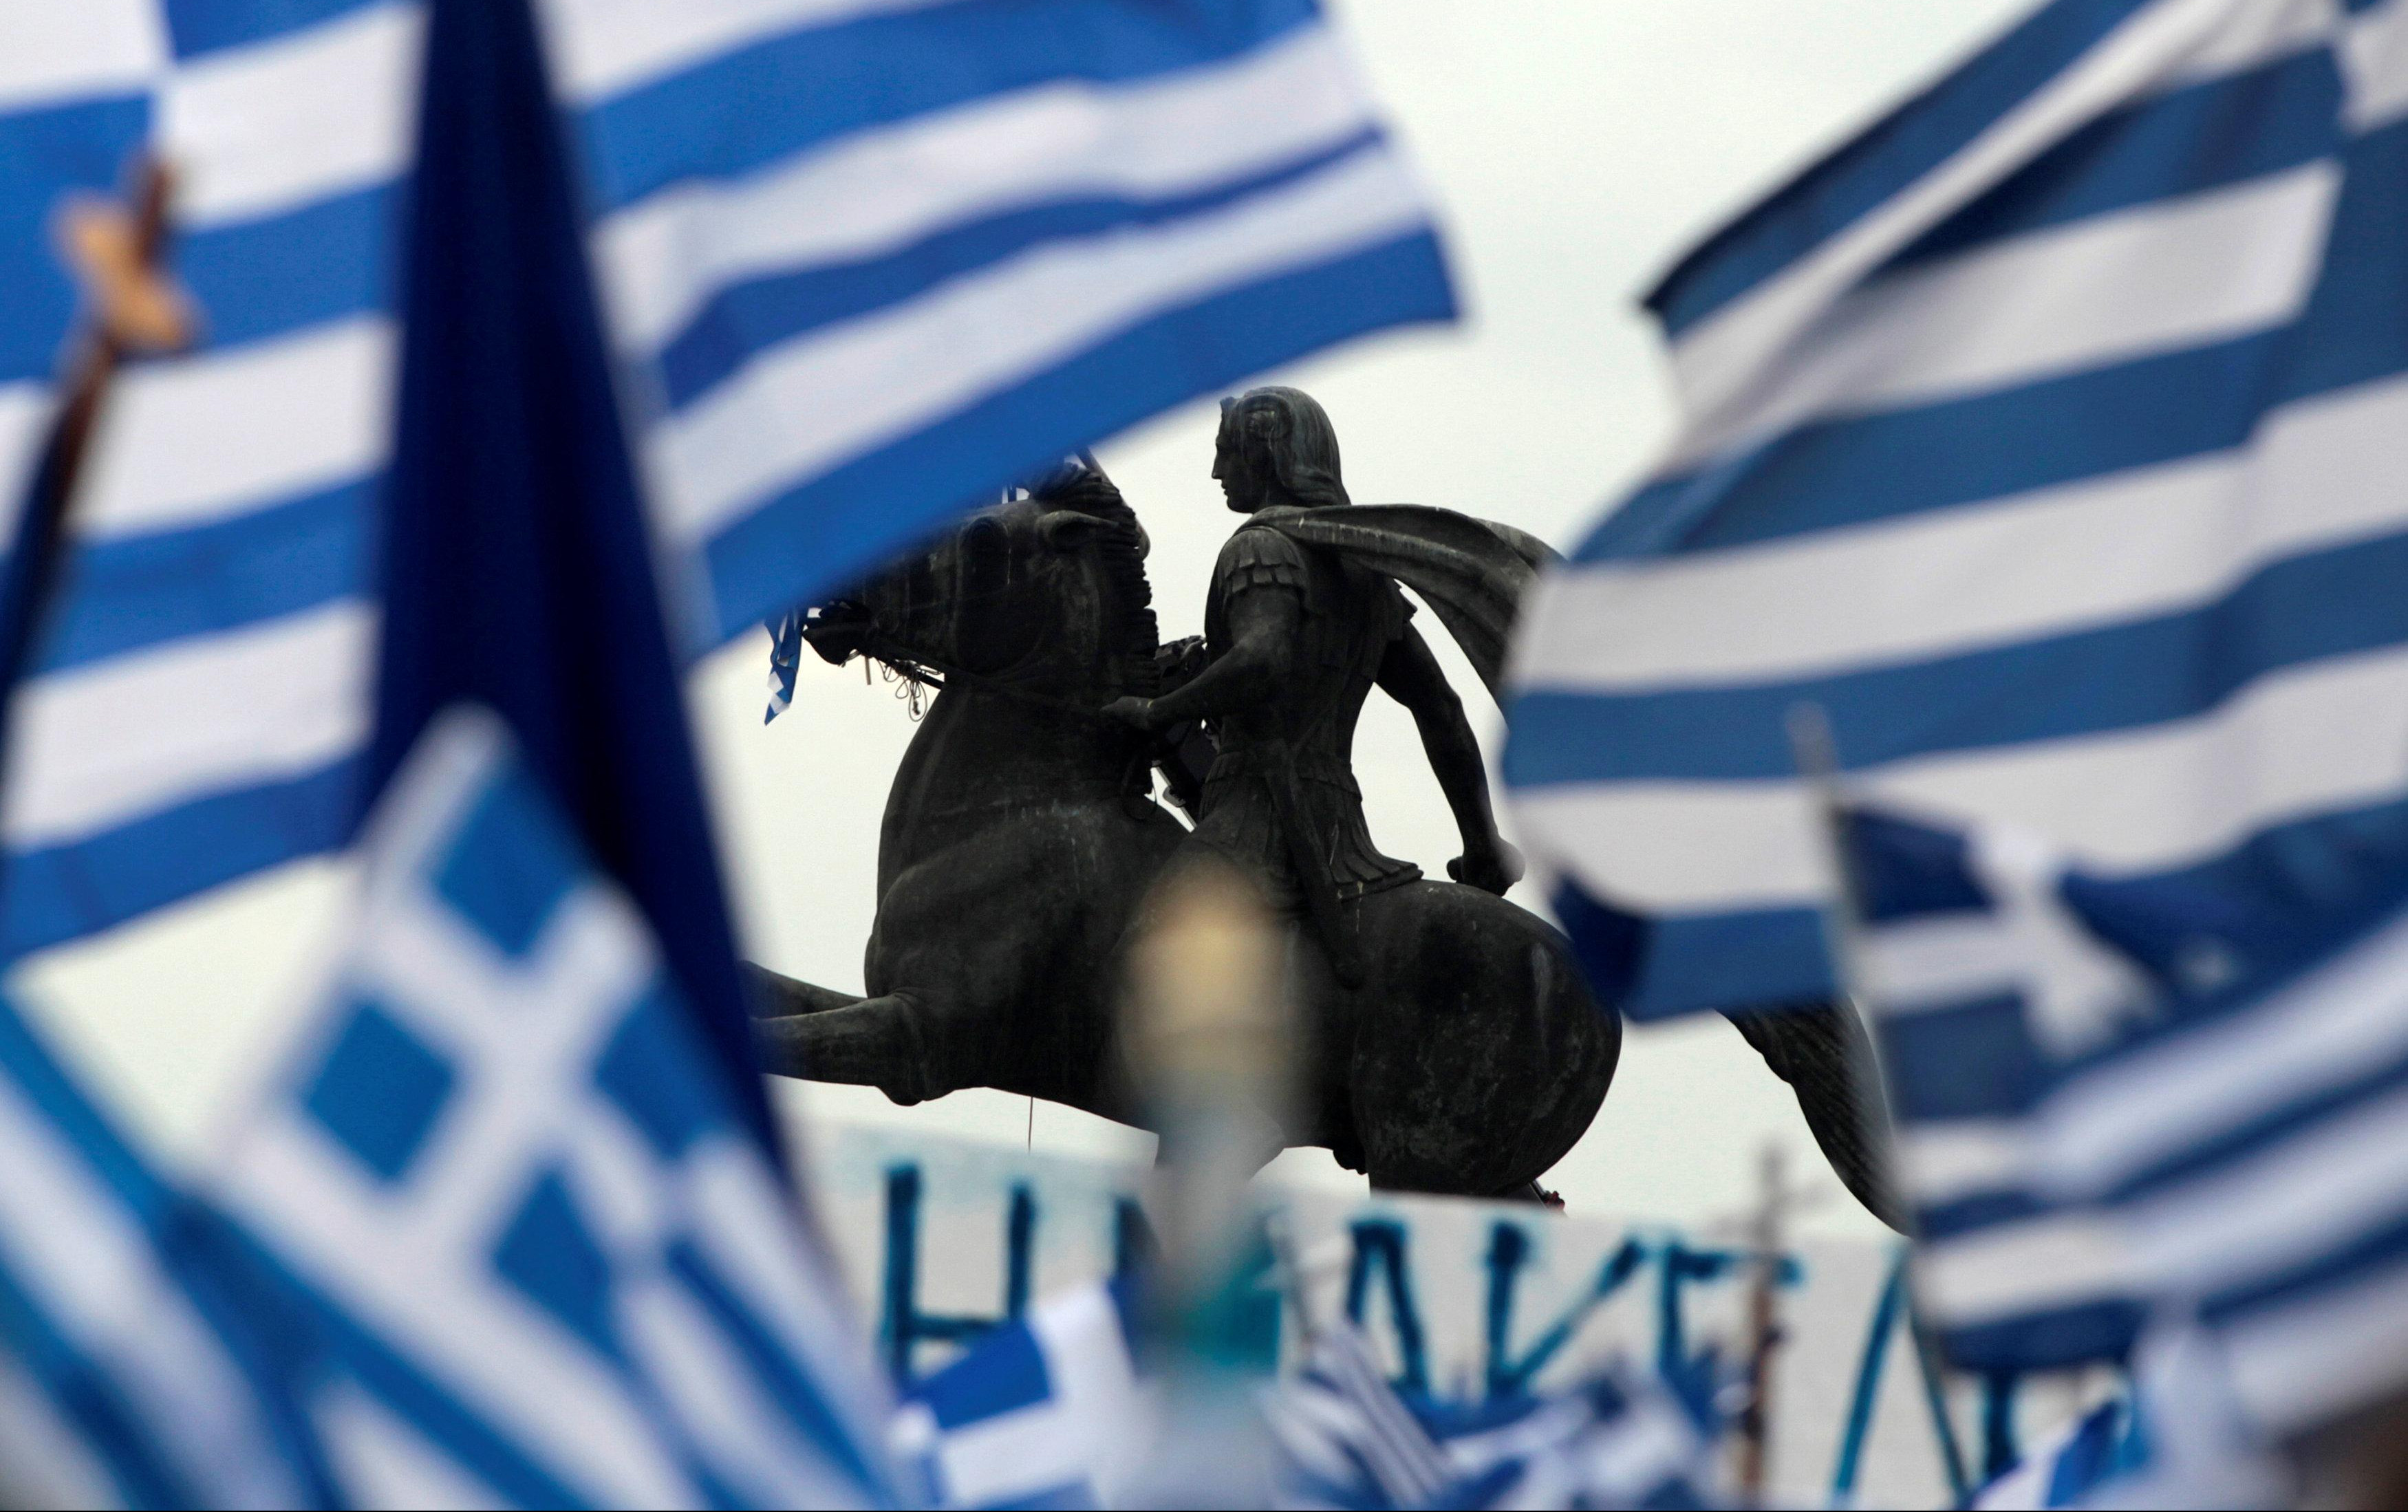 DOGOVOR ATINE I SKOPLJA NI NA VIDIKU: Dva nova uslova odlažu sporazum GRČKE I MAKEDONIJE